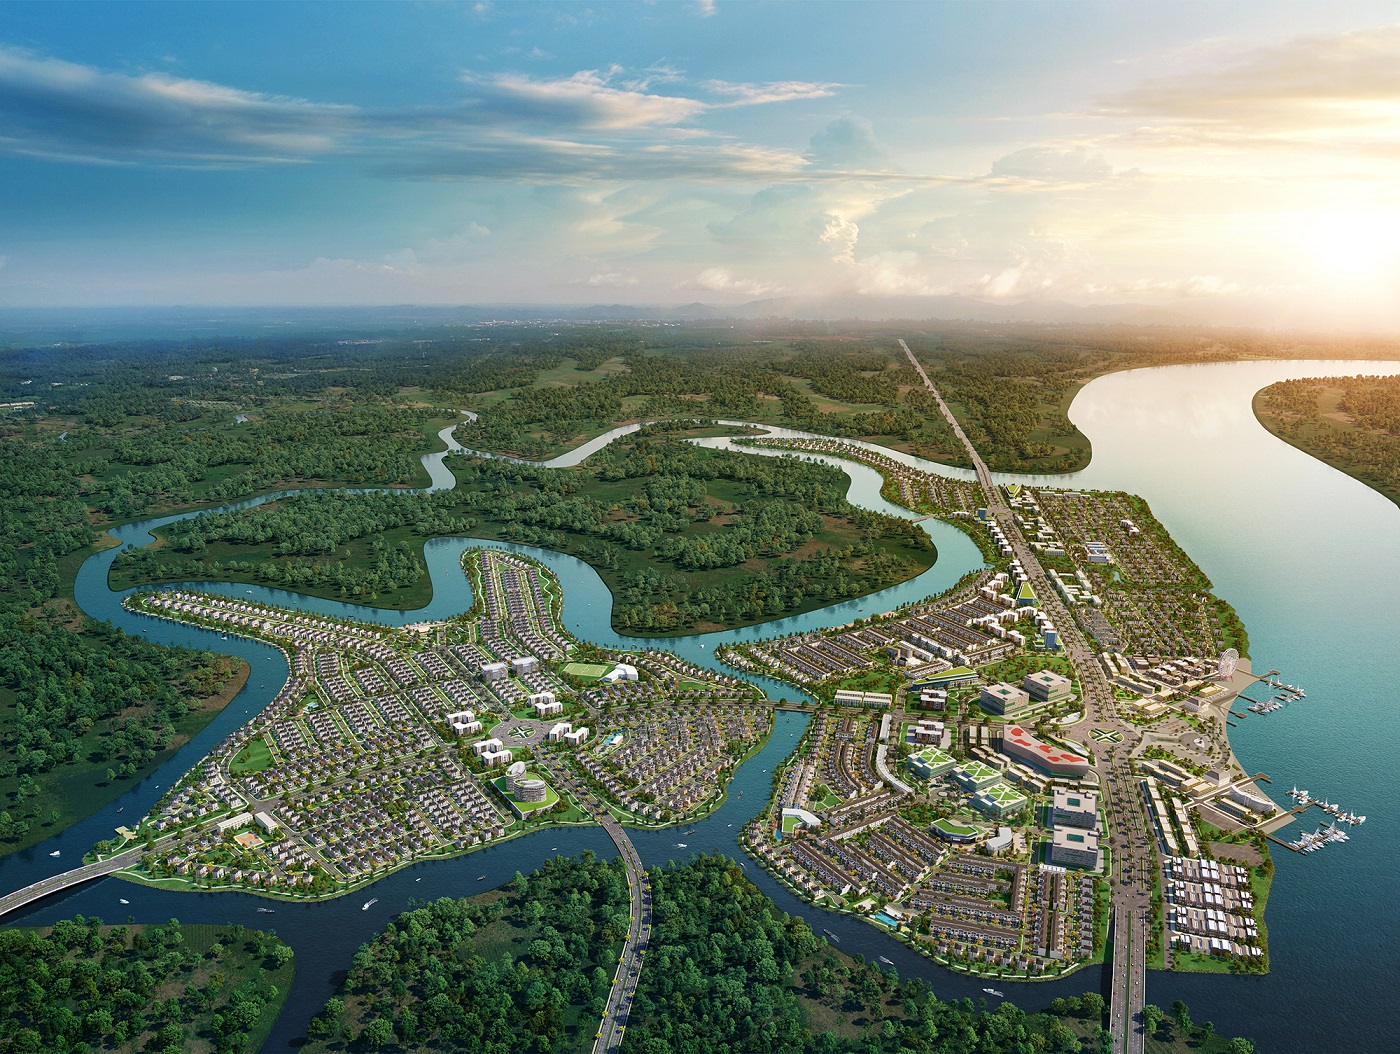 Khu đô thị sinh thái thông minh Aqua City quy mô gần 1000 ha, dự án dành đến 70% diện tích cho không gian xanh và tiện ích nội khu